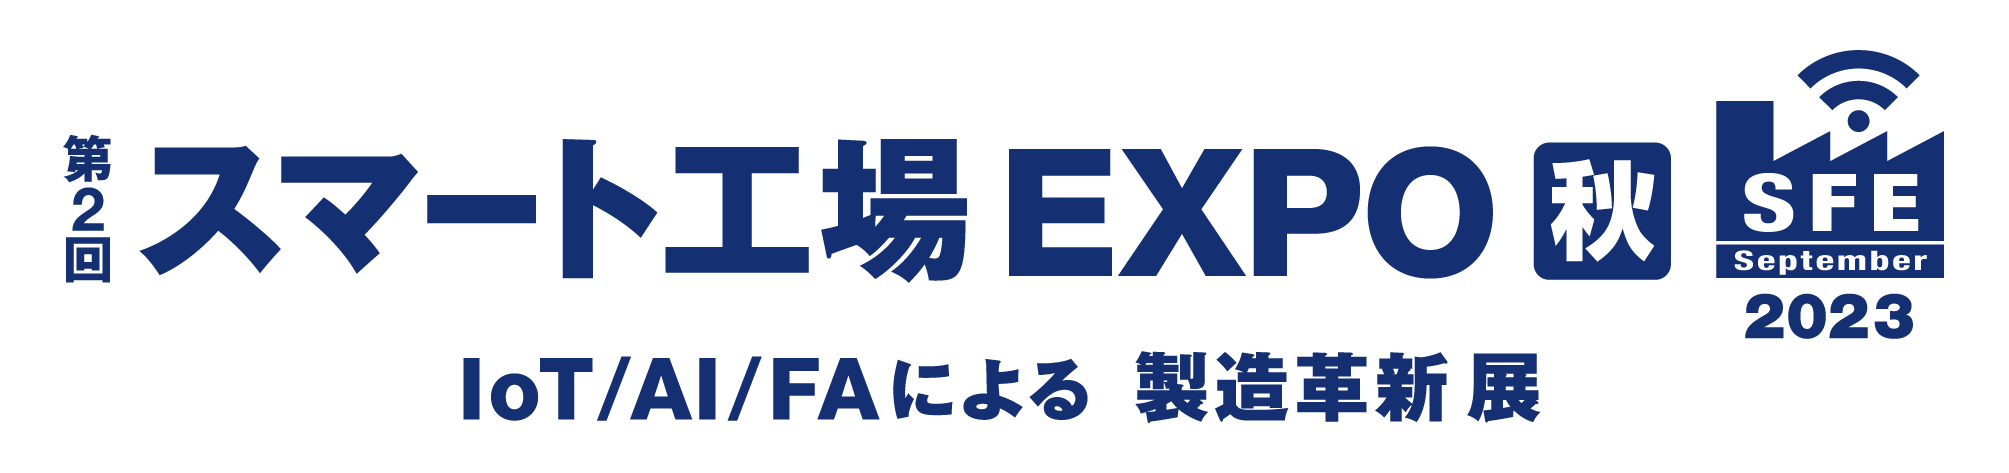 Expo_Logo